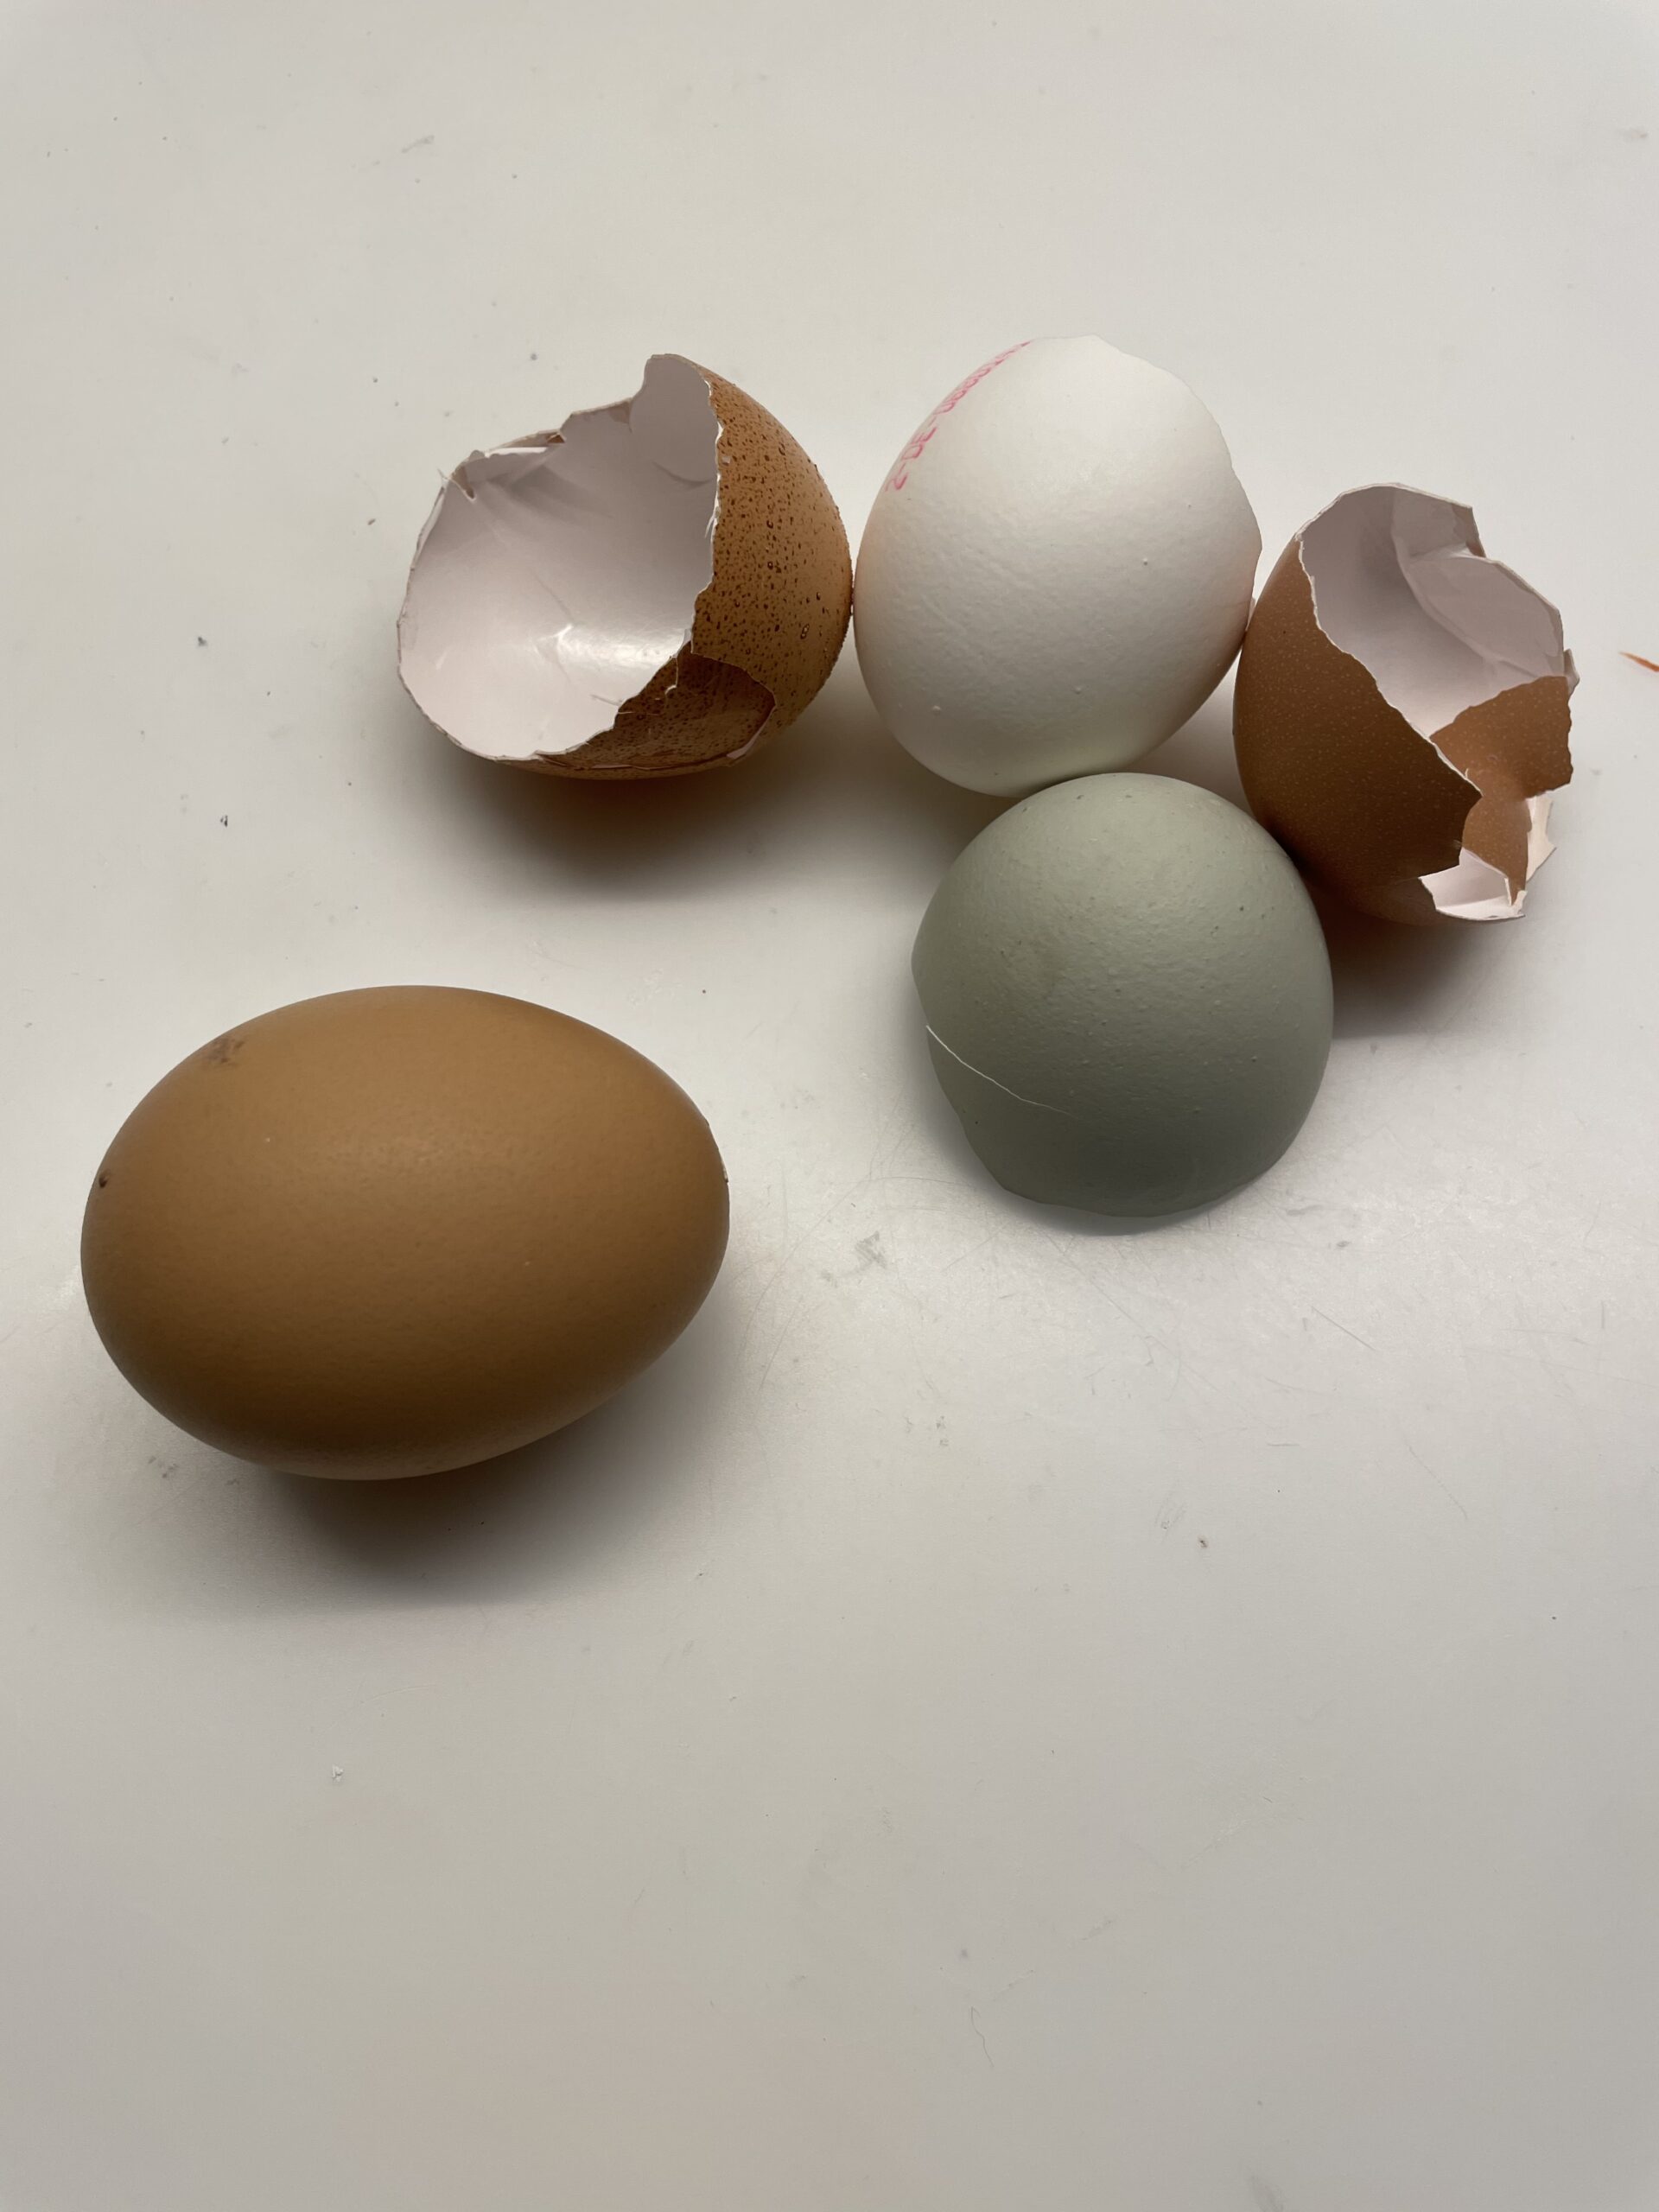 Bild zum Schritt 1 für das Bastel- und DIY-Abenteuer für Kinder: 'Wählt Eierschalen in verschiedenen Farbtönen und reinigt diese vorher. ...'